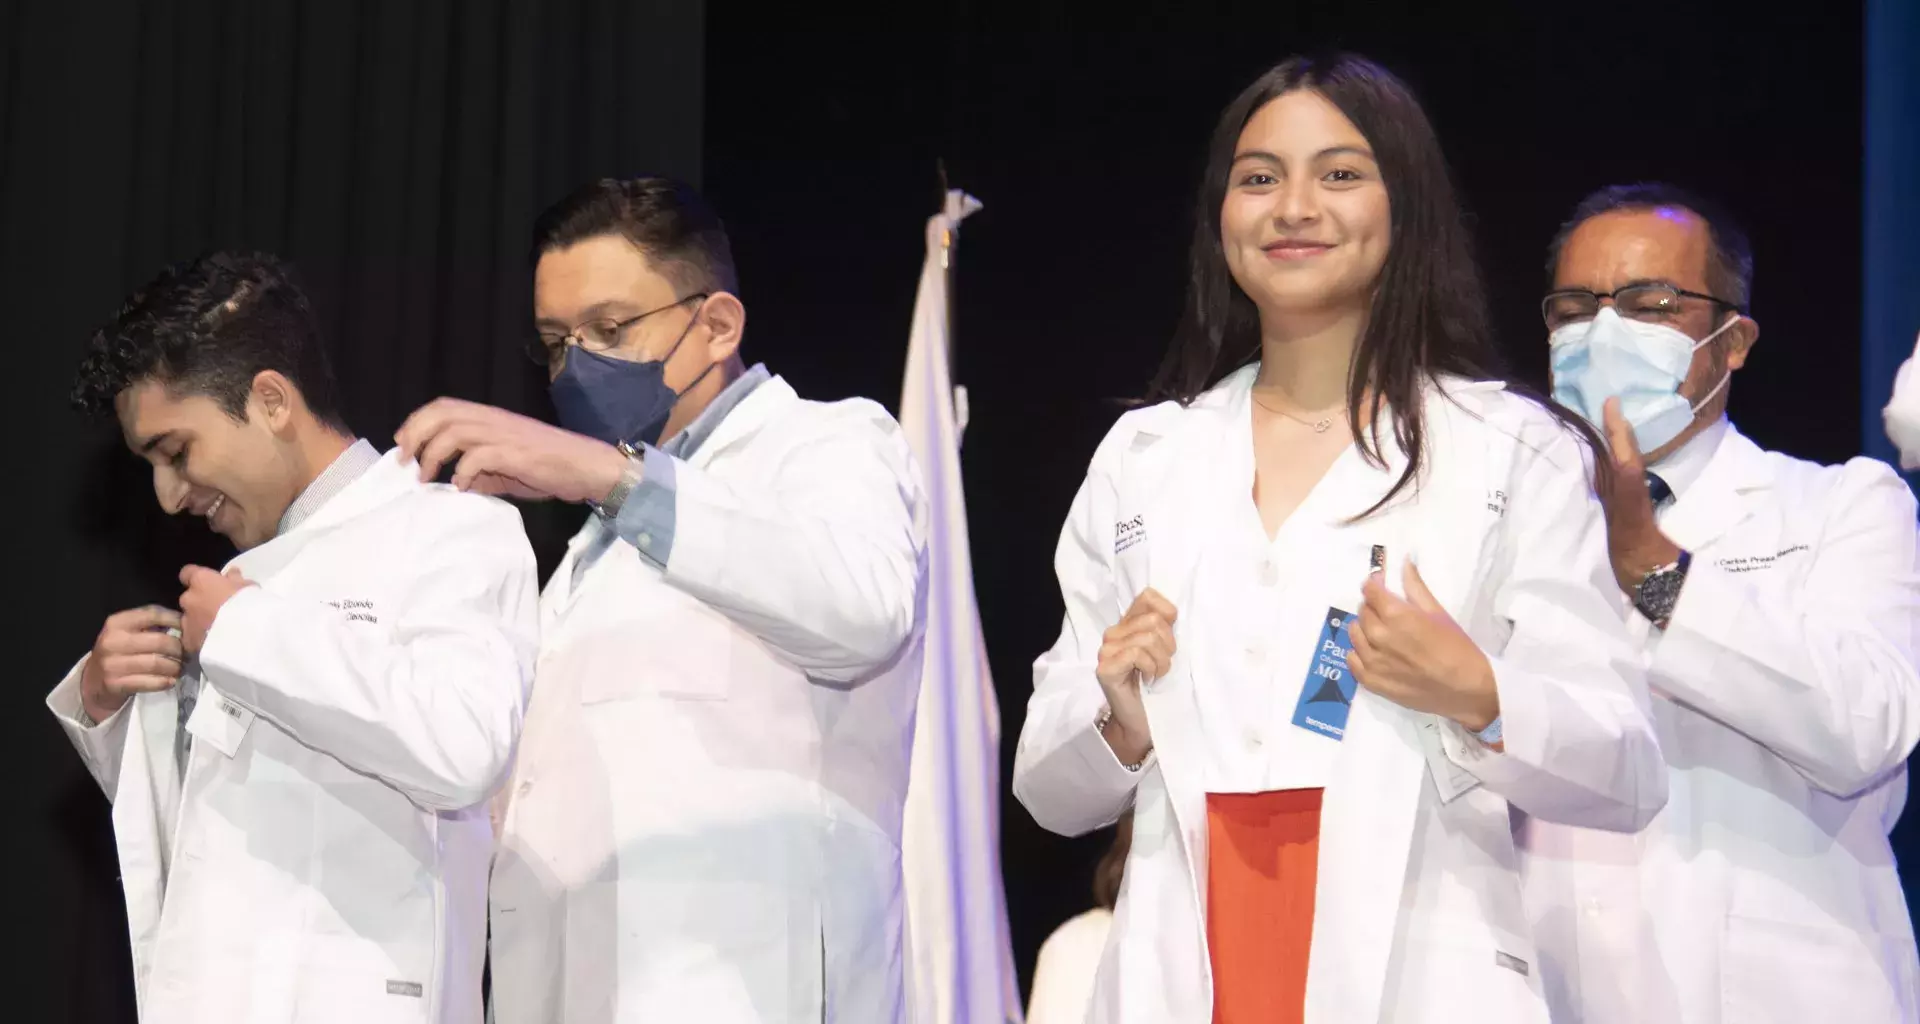 Alumnos de nuevo ingreso de la Escuela de Medicina del Tec de Monterrey, porta por primera vez el saco blanco.